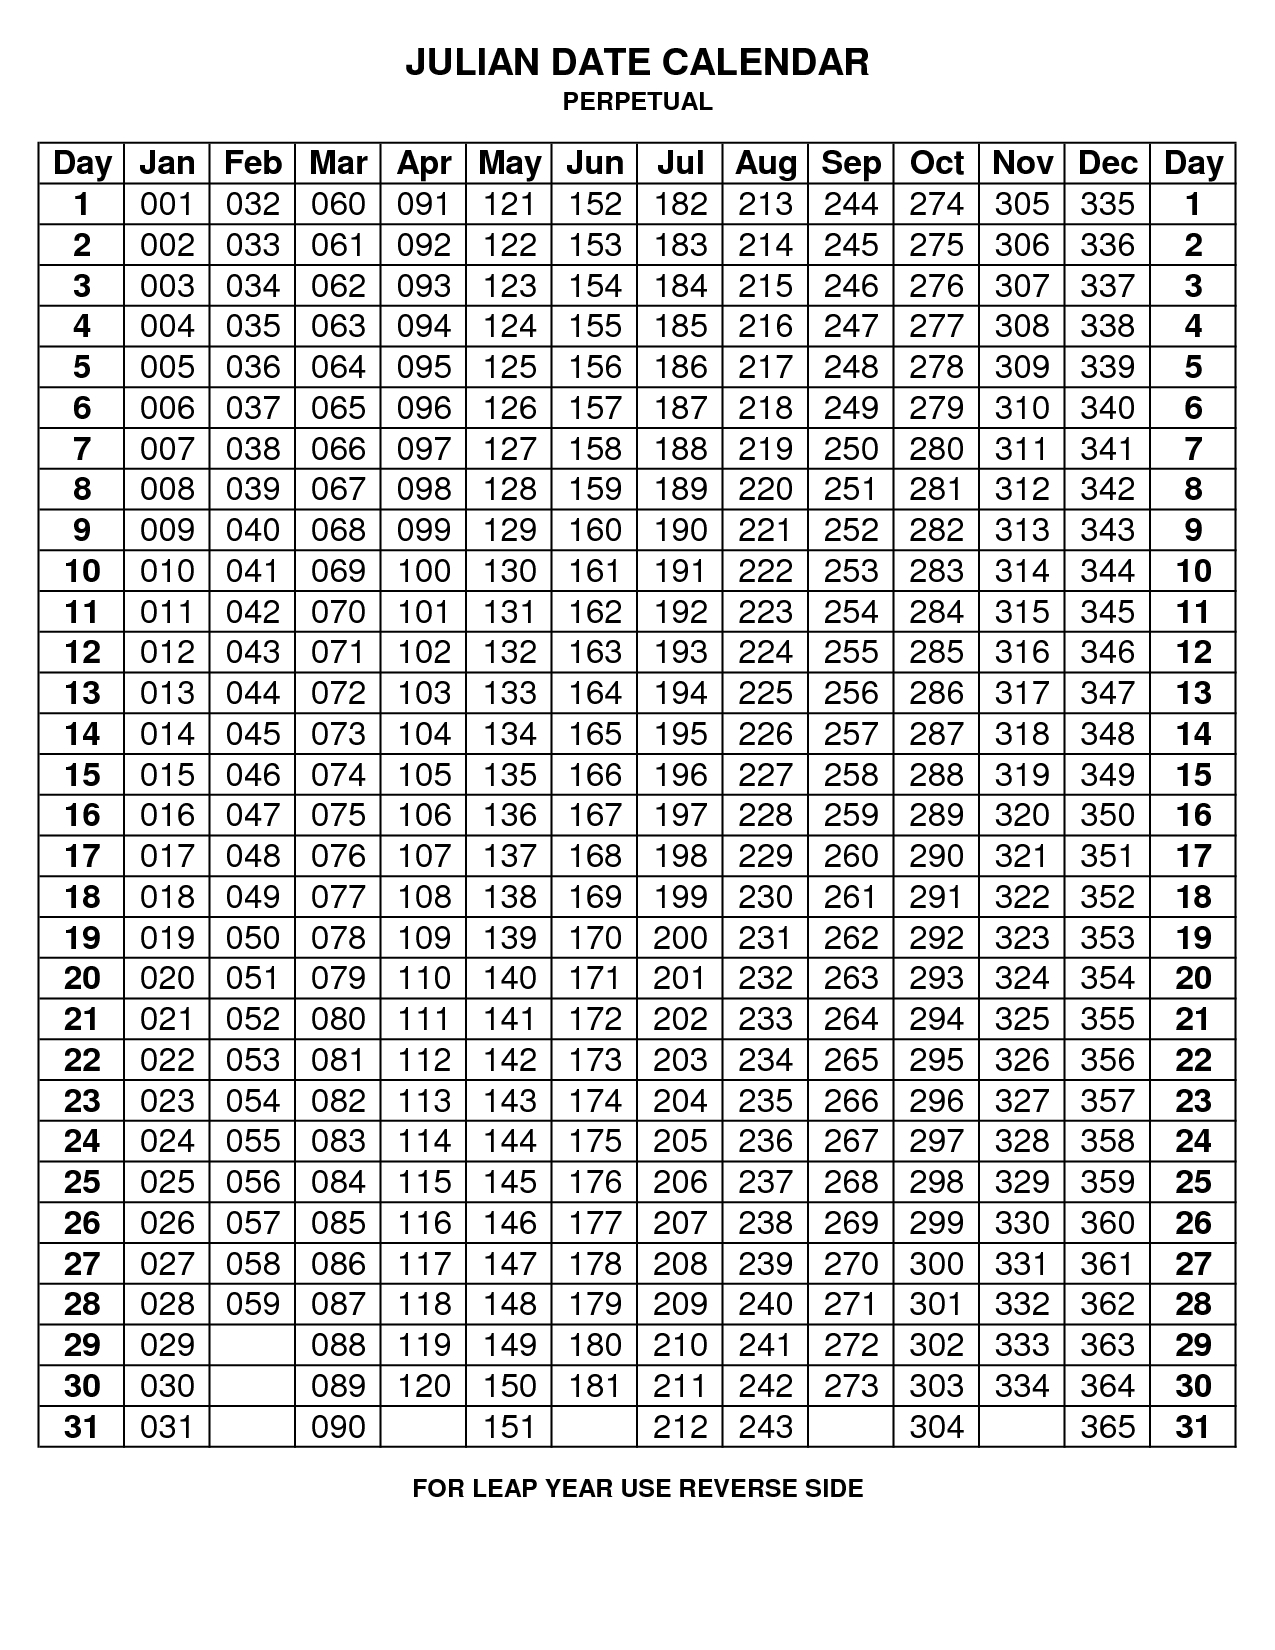 2020 Julian Calendar Non Leap Year | Example Calendar Printable pertaining to 2020 Julian Calendar